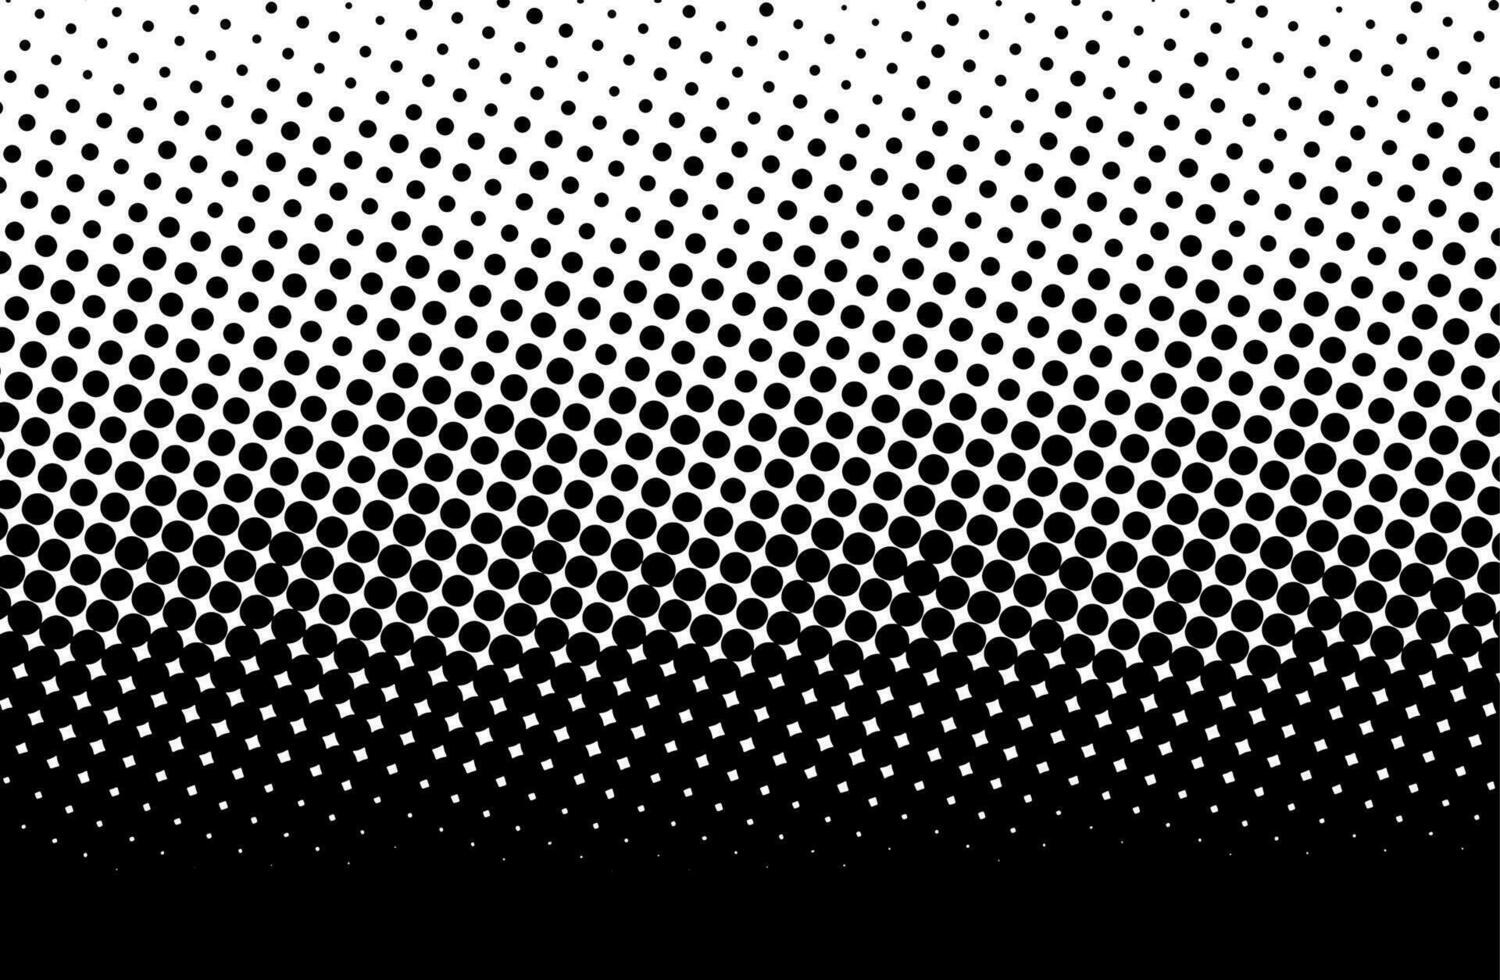 punto modelo con trama de semitonos efecto. negro blanco popular Arte degradado. monocromo textura para impresión en insignias, carteles, y negocio tarjetas vector